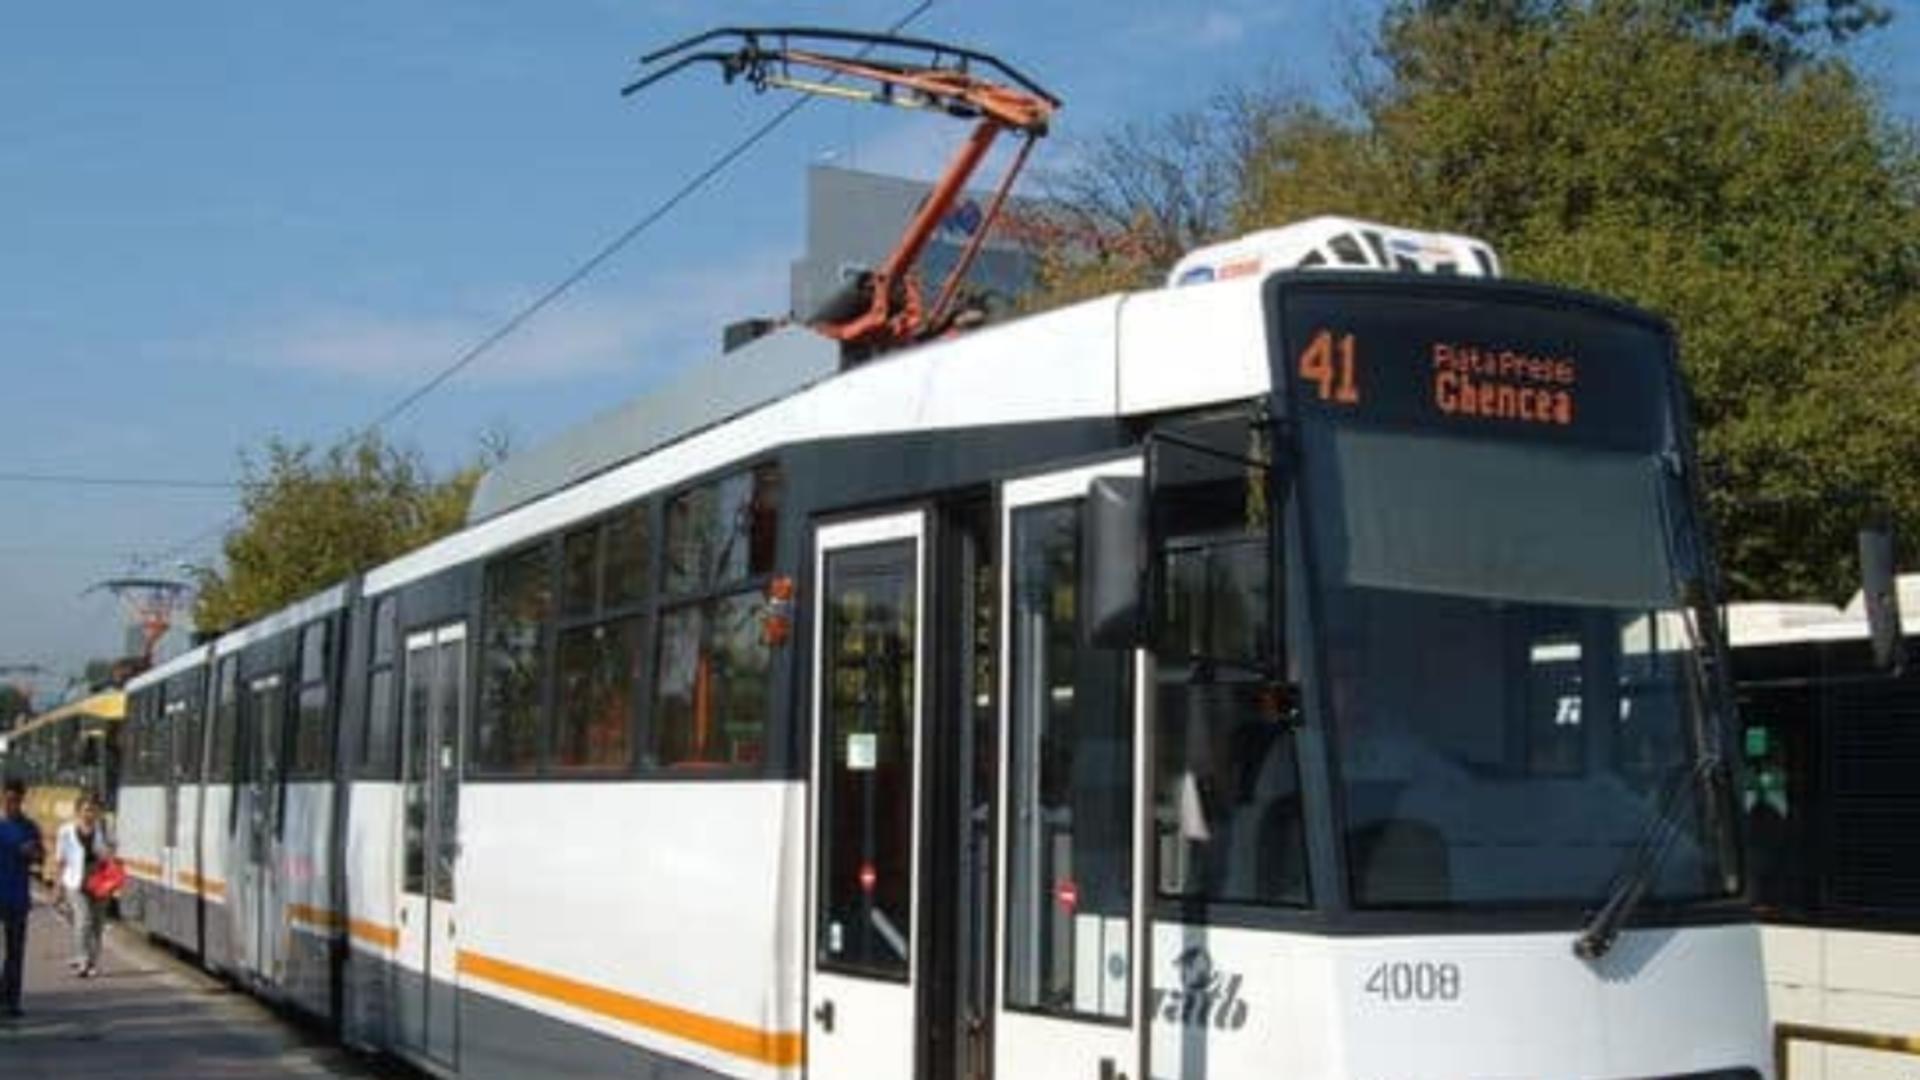 Circulaţia tramvaielor pe linia 41 - blocată peste 2 ore pe Șoseaua Virtuții, spre Piața Presei